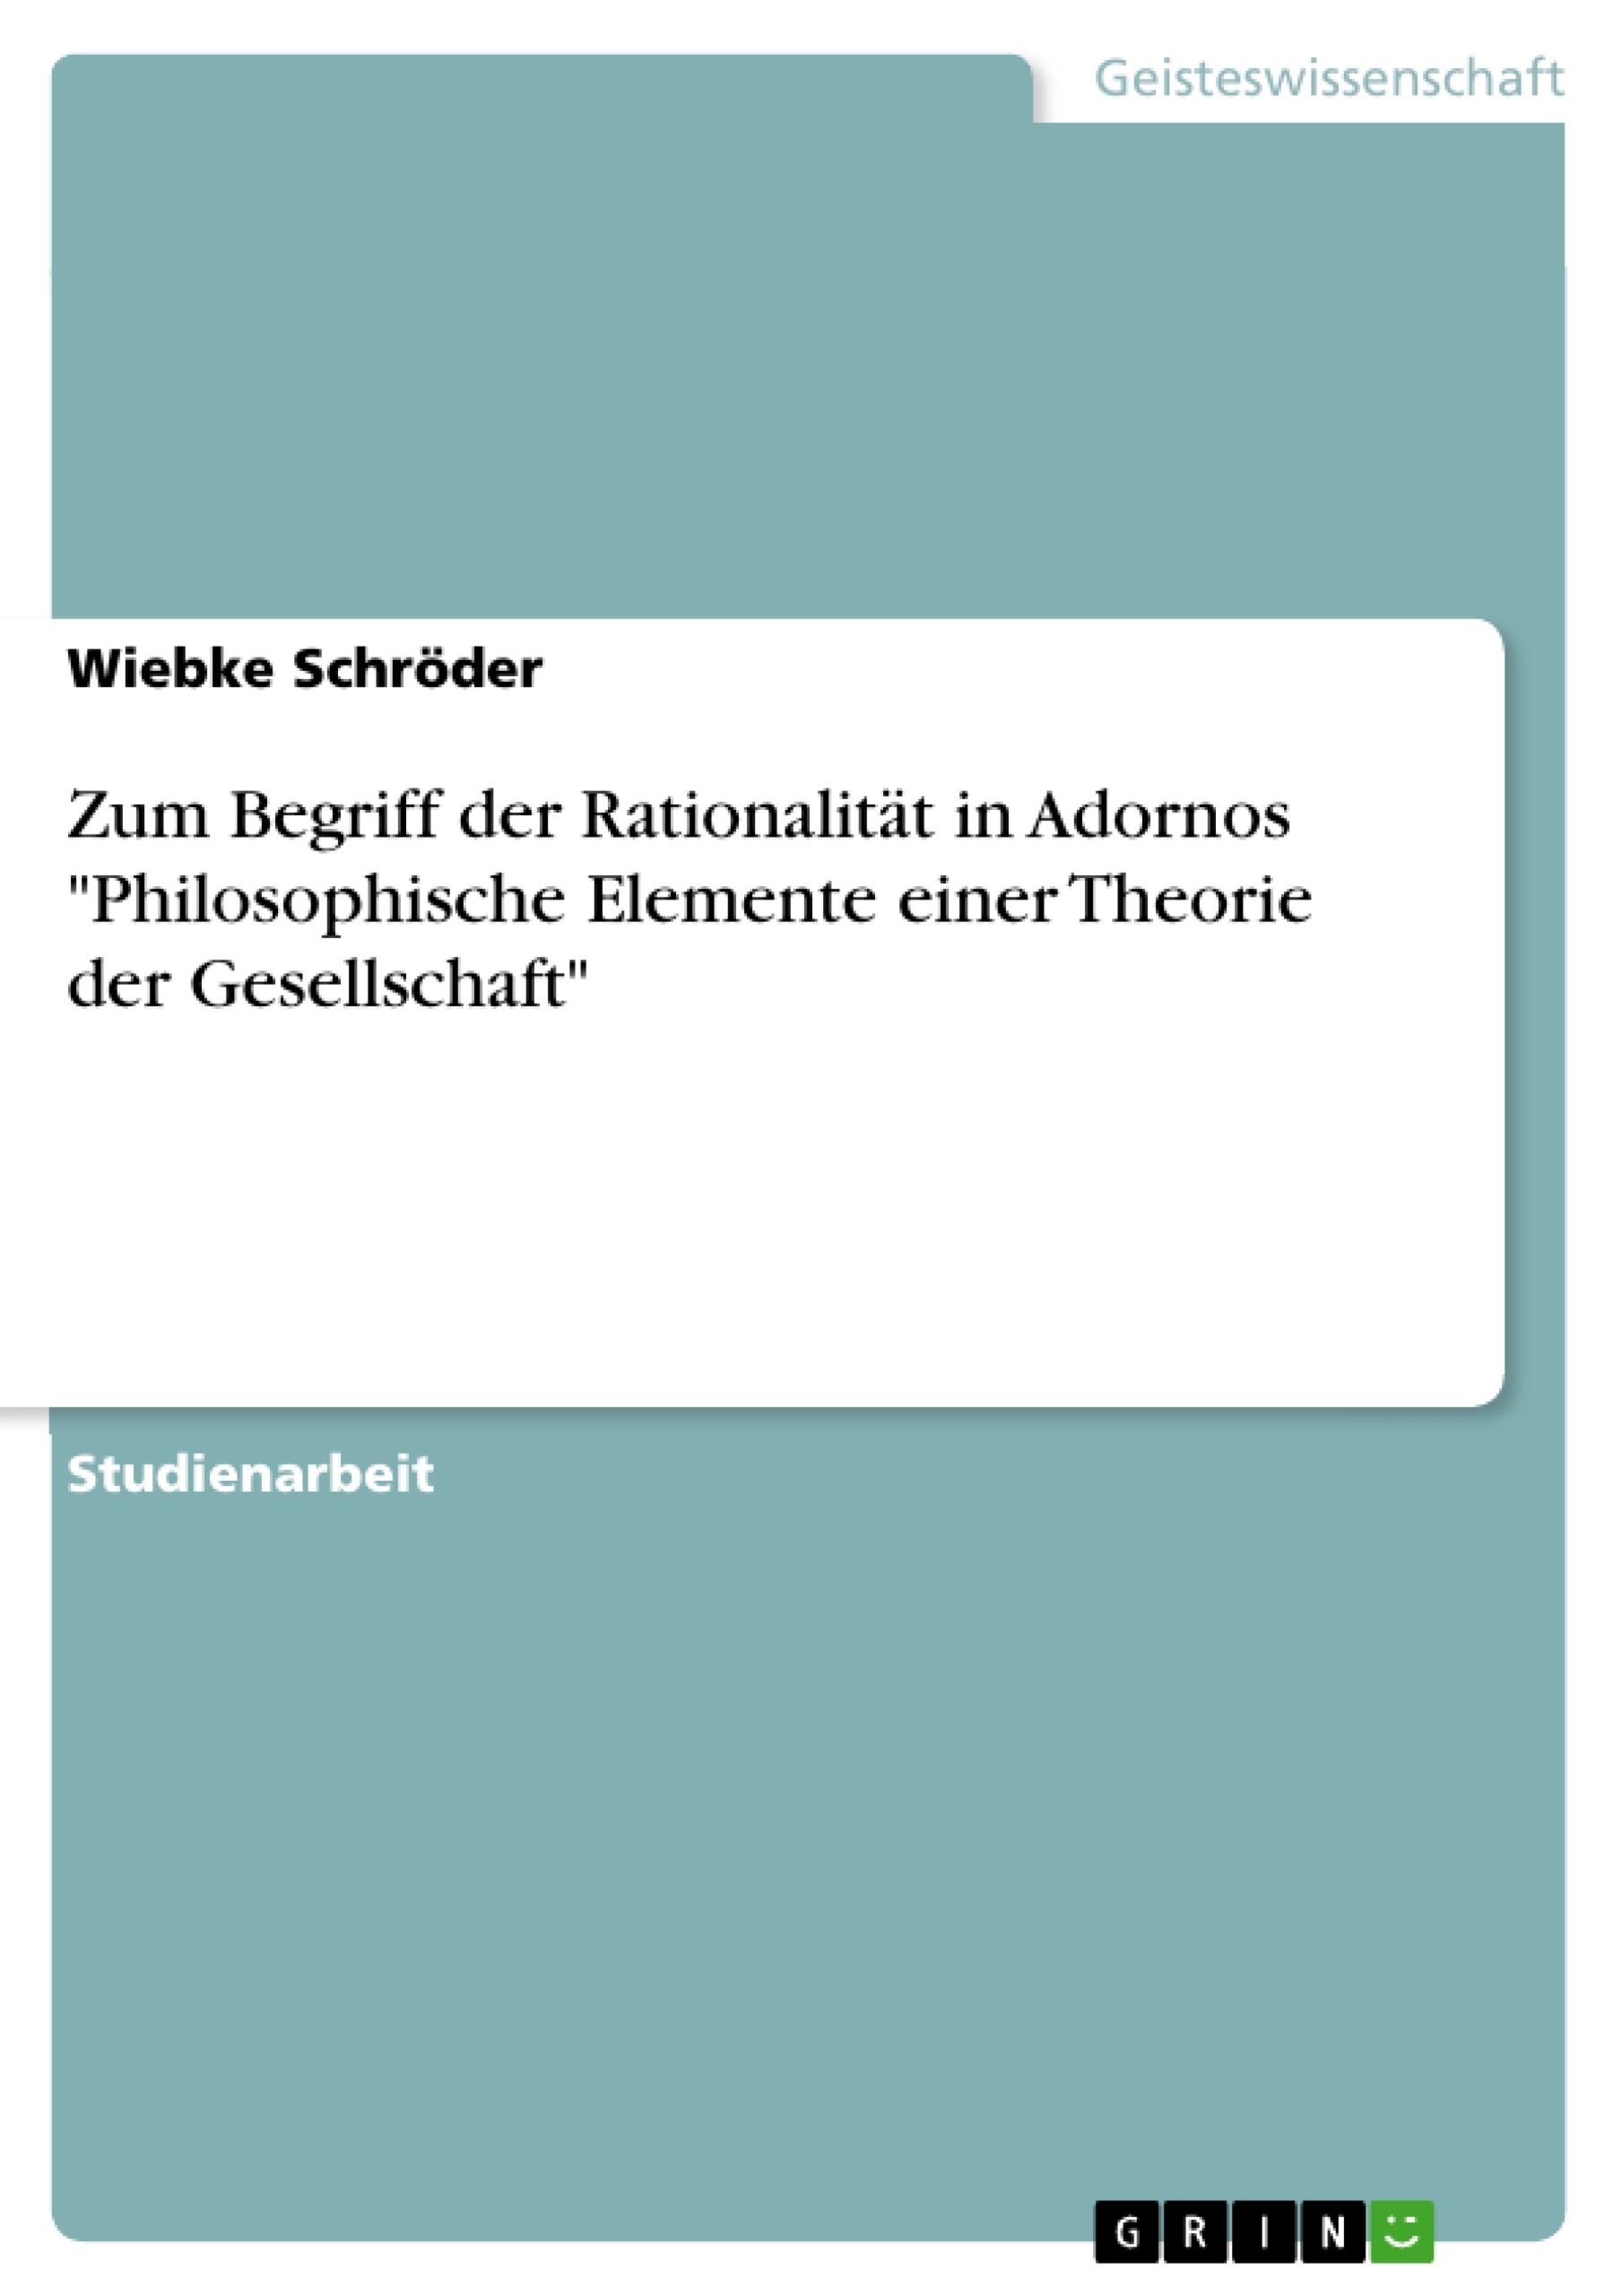 Título: Zum Begriff der Rationalität in Adornos "Philosophische Elemente einer Theorie der Gesellschaft"